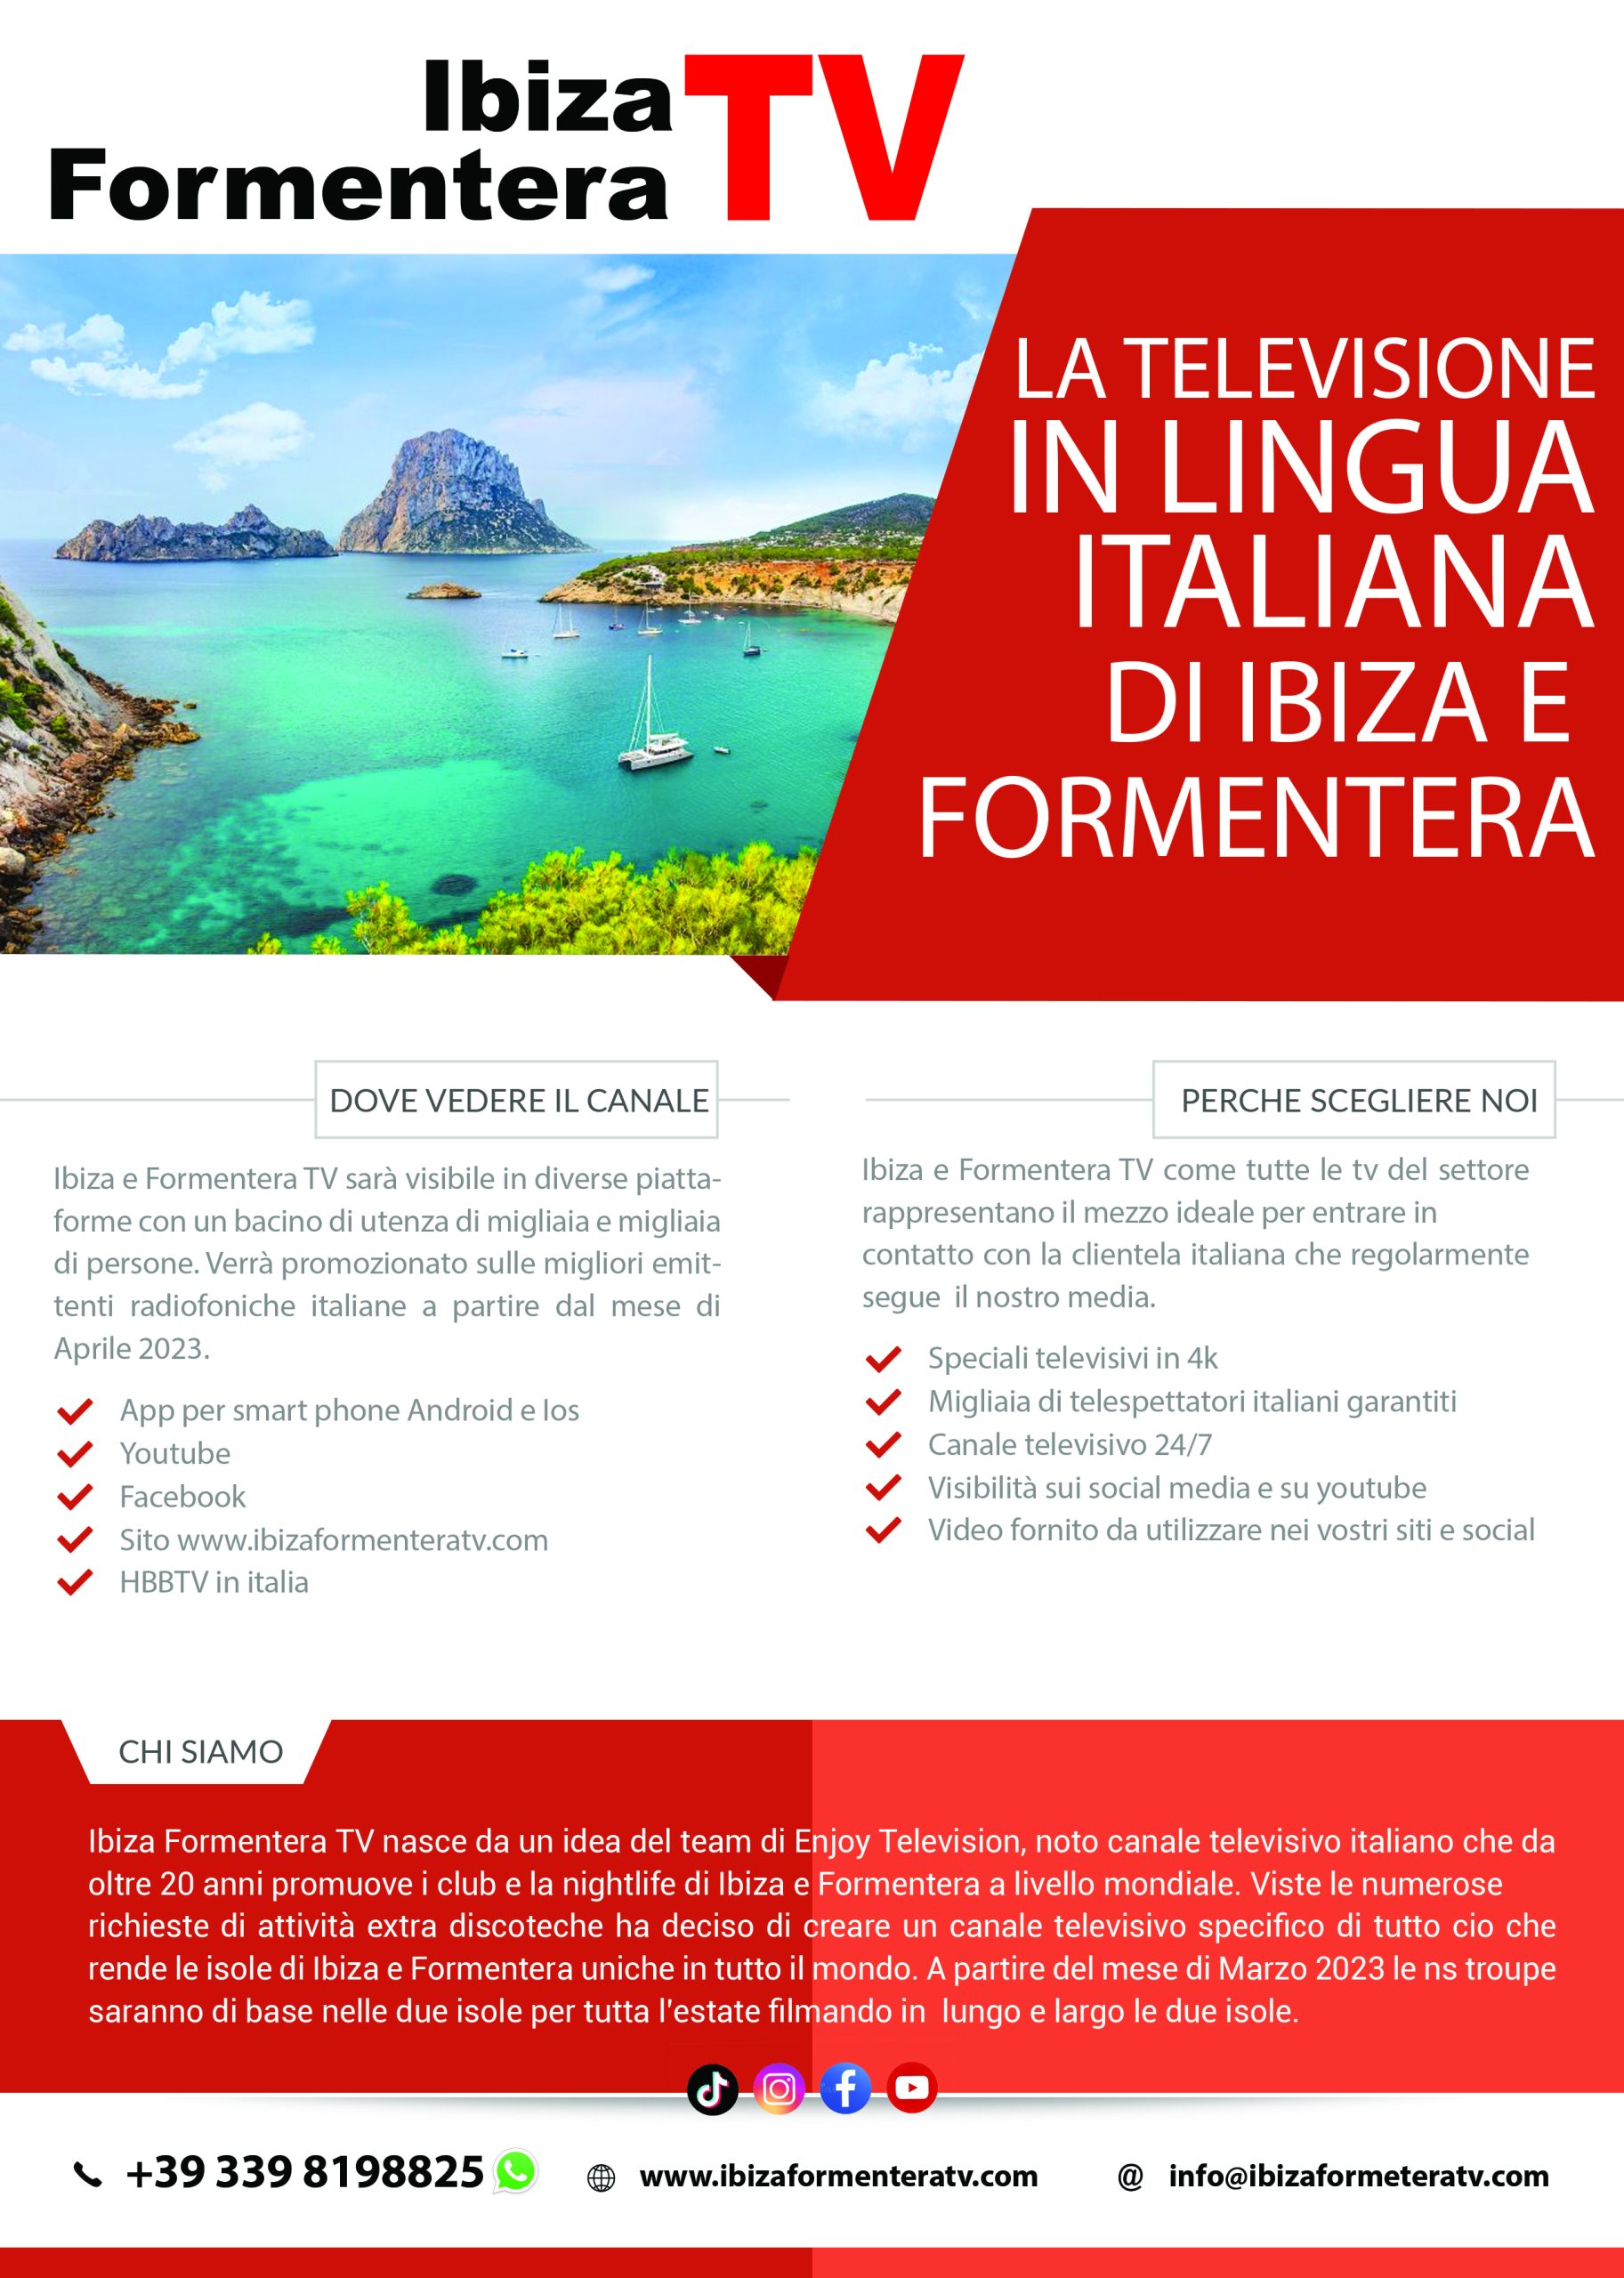 Vuoi aggiungere la tua attività al Ibiza Formentera TV?